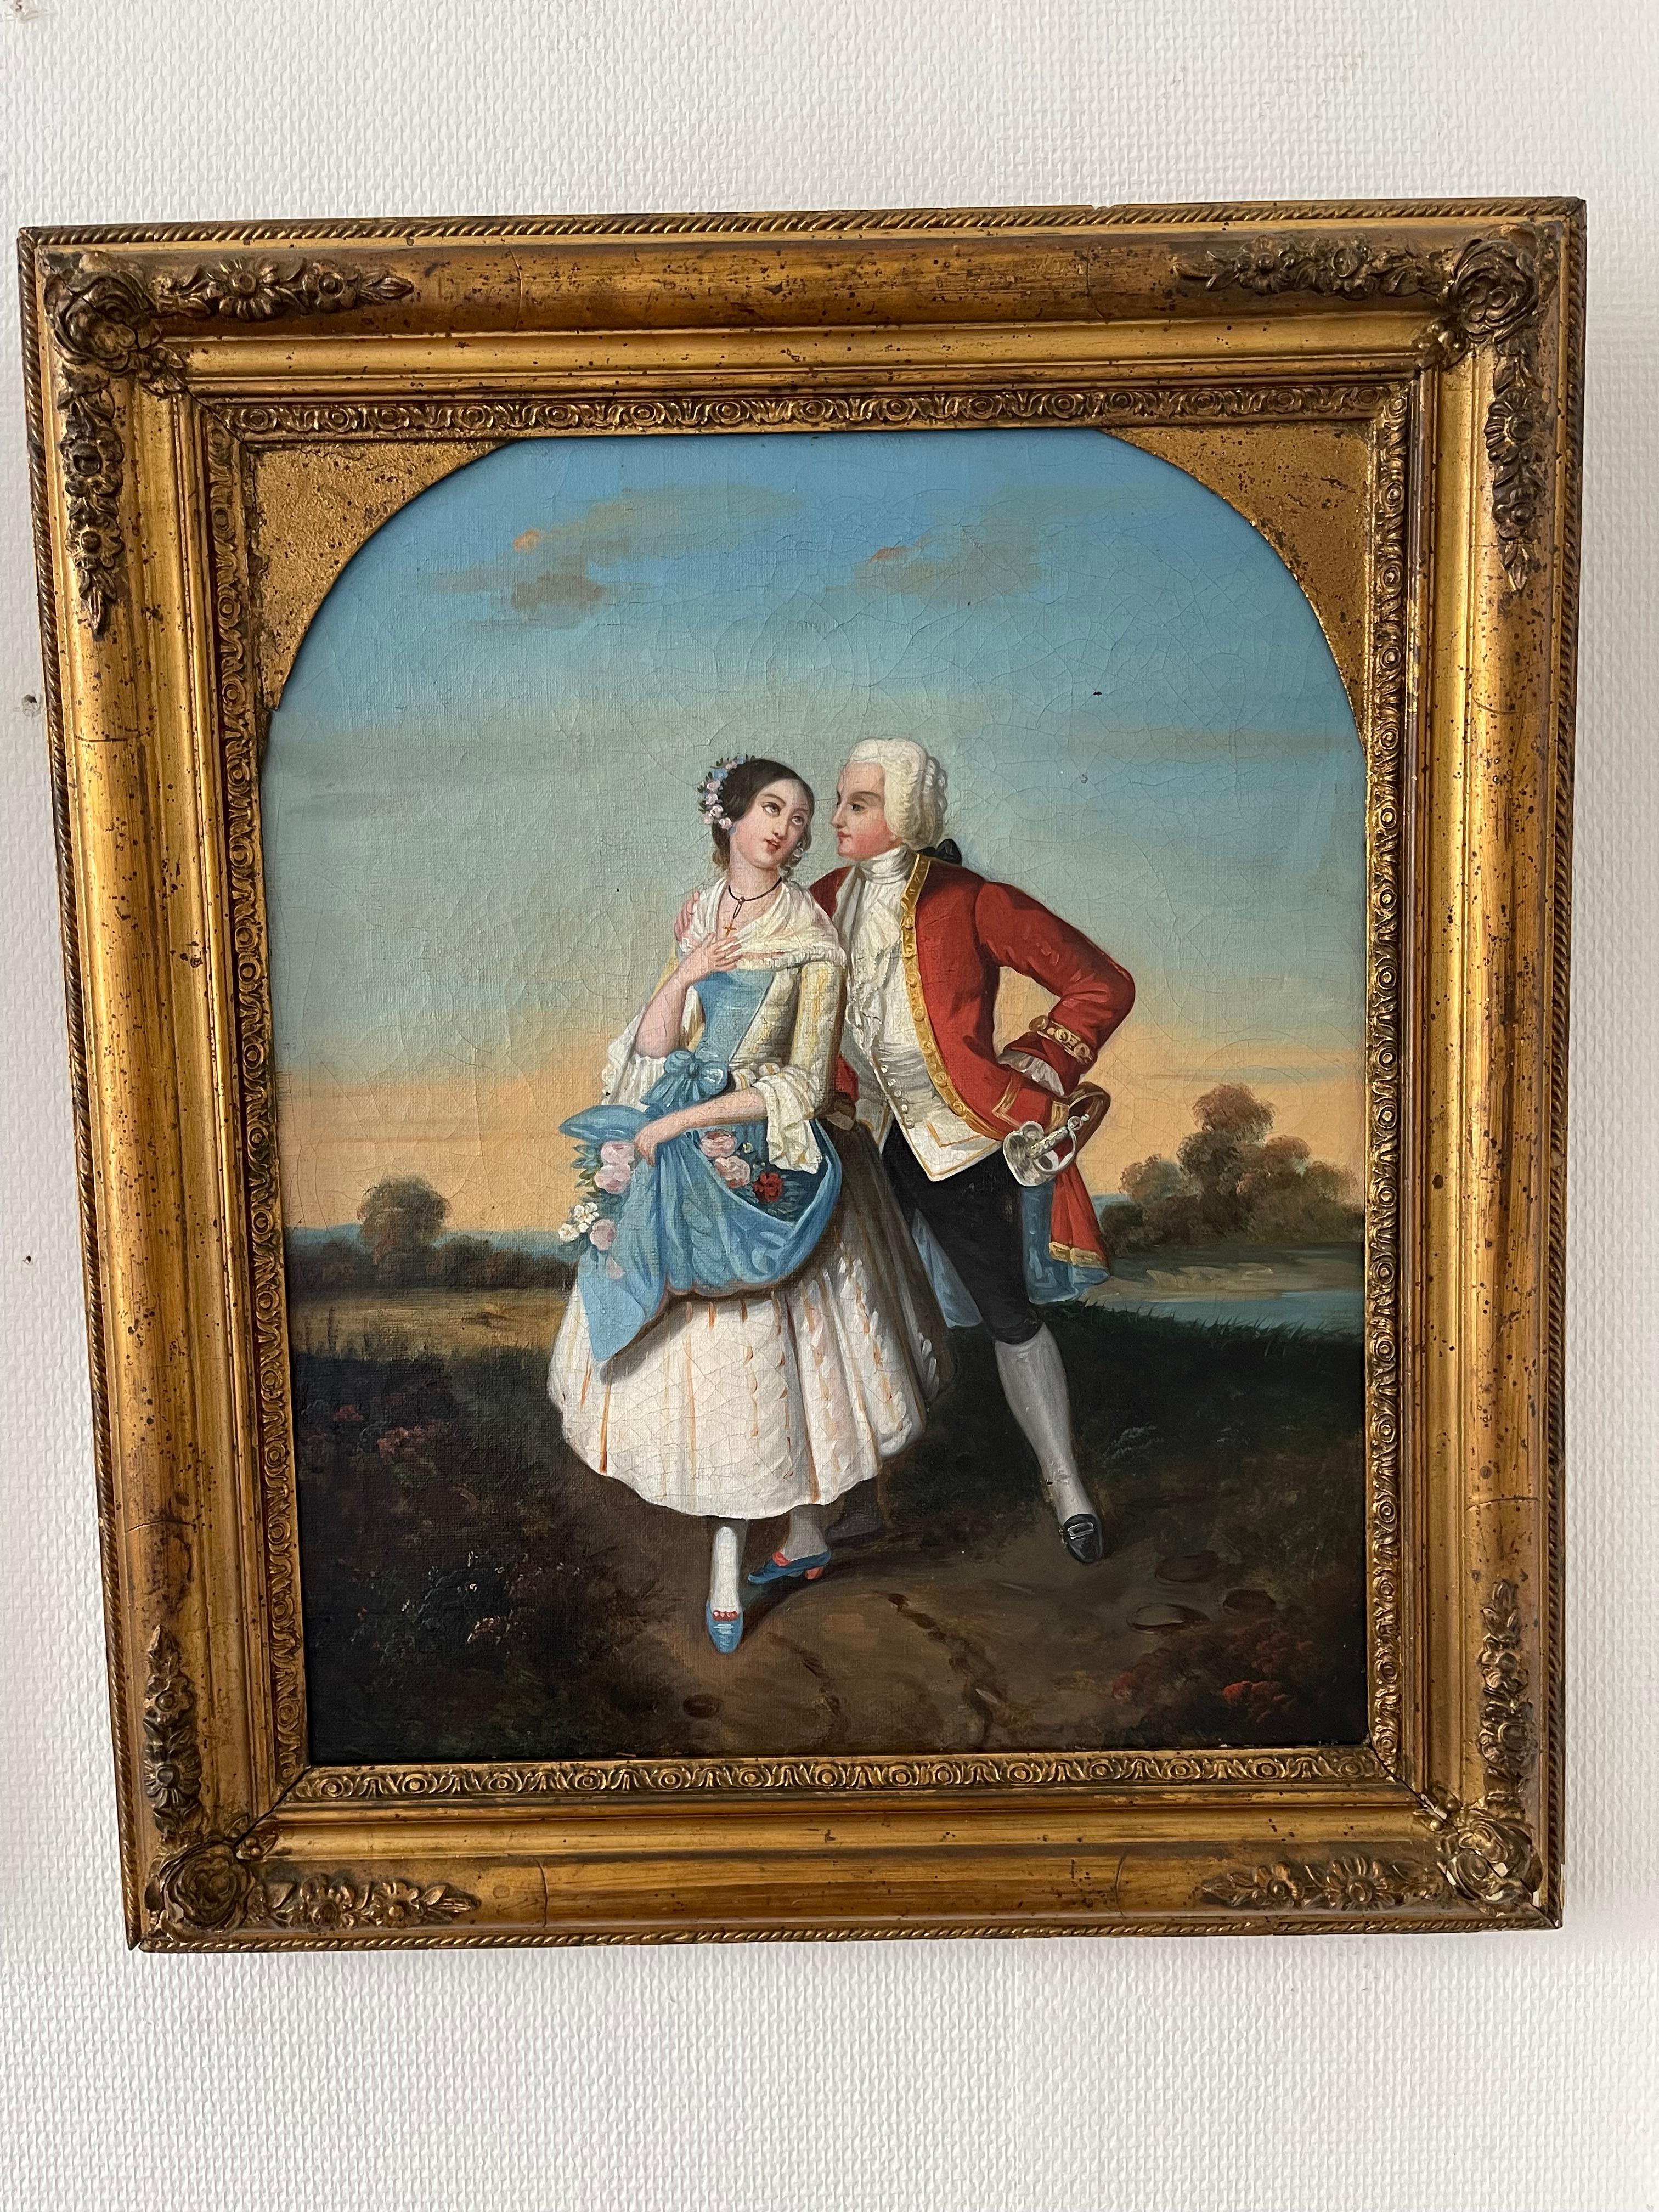 Ces deux tableaux forment une paire d'œuvres artistiques qui capturent des scènes amoureuses typiques du 19e siècle. Le premier tableau représente deux jeunes individus debout, vêtus de costumes d'époque. La tension est palpable dans les regards